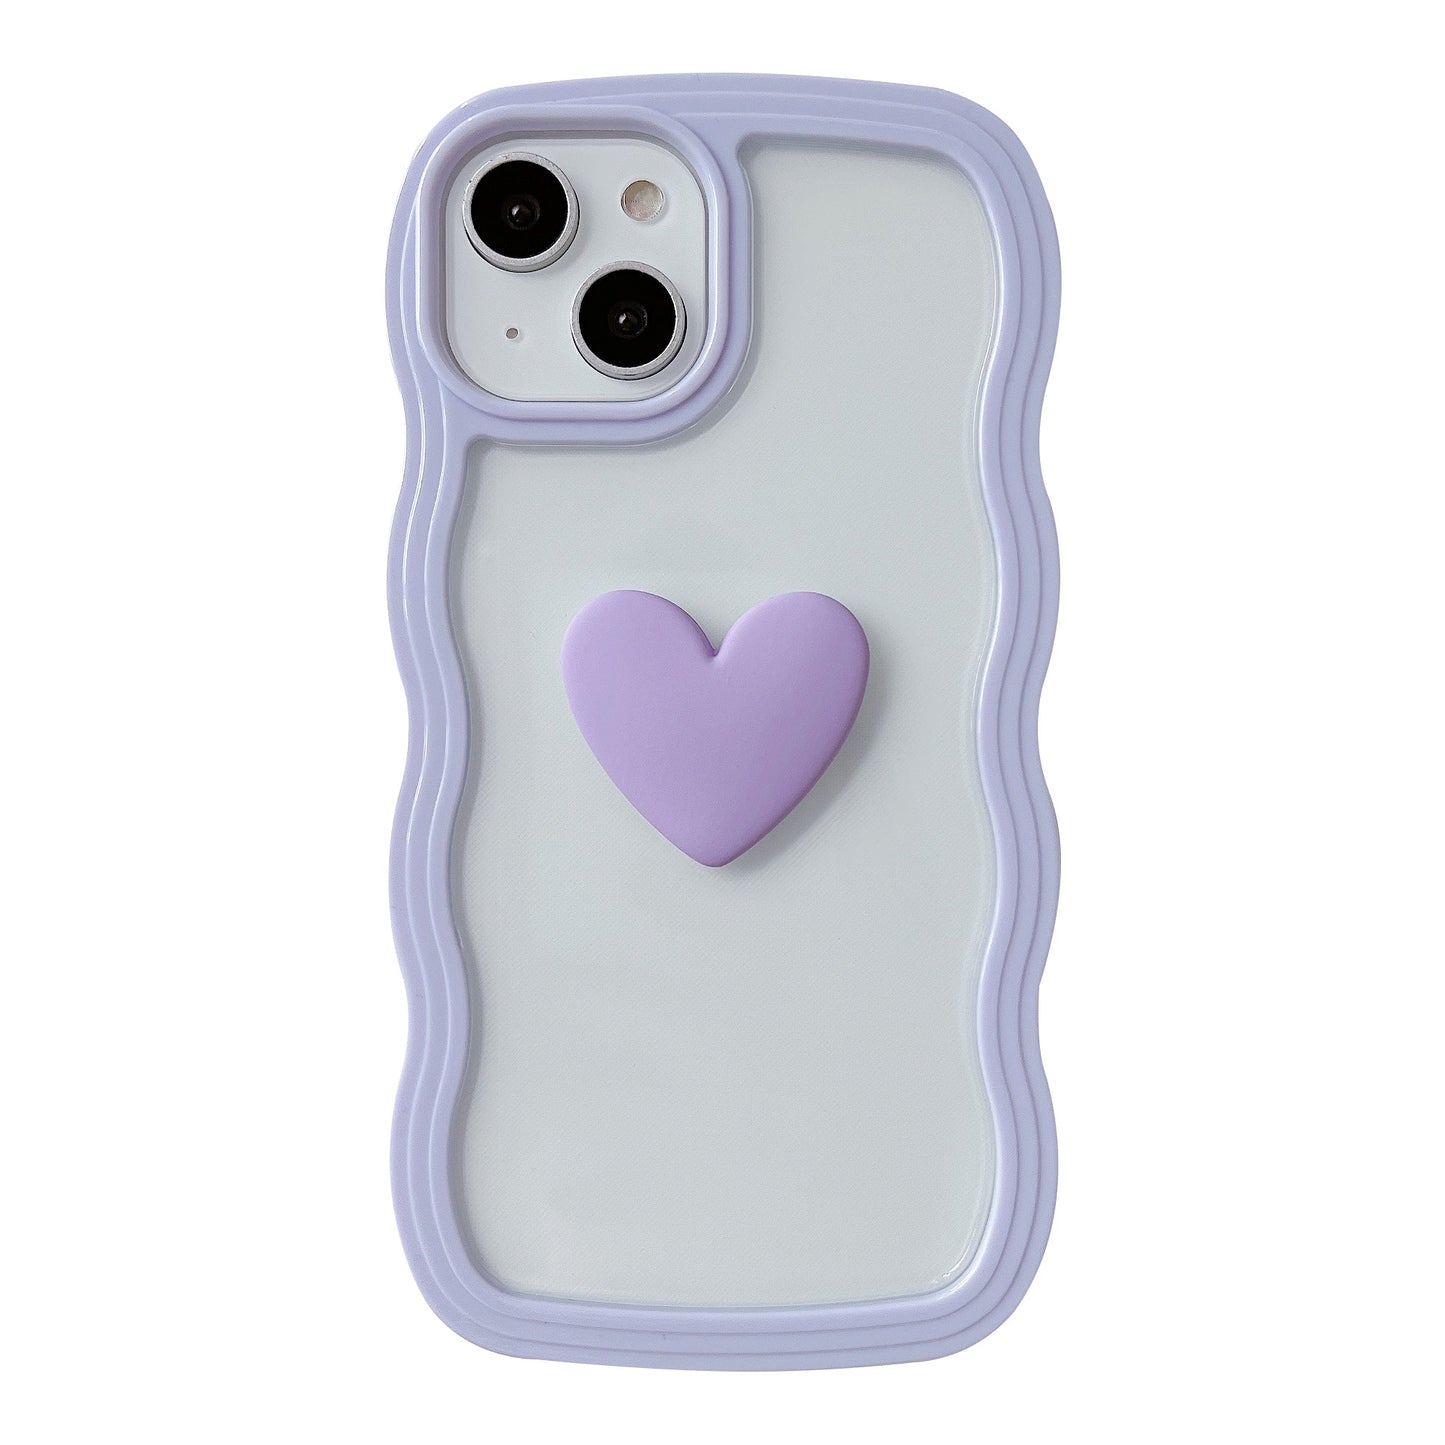 Marco ondulado rizado 3D Love Heart Clear Candy Color Compatible con iPhone Case